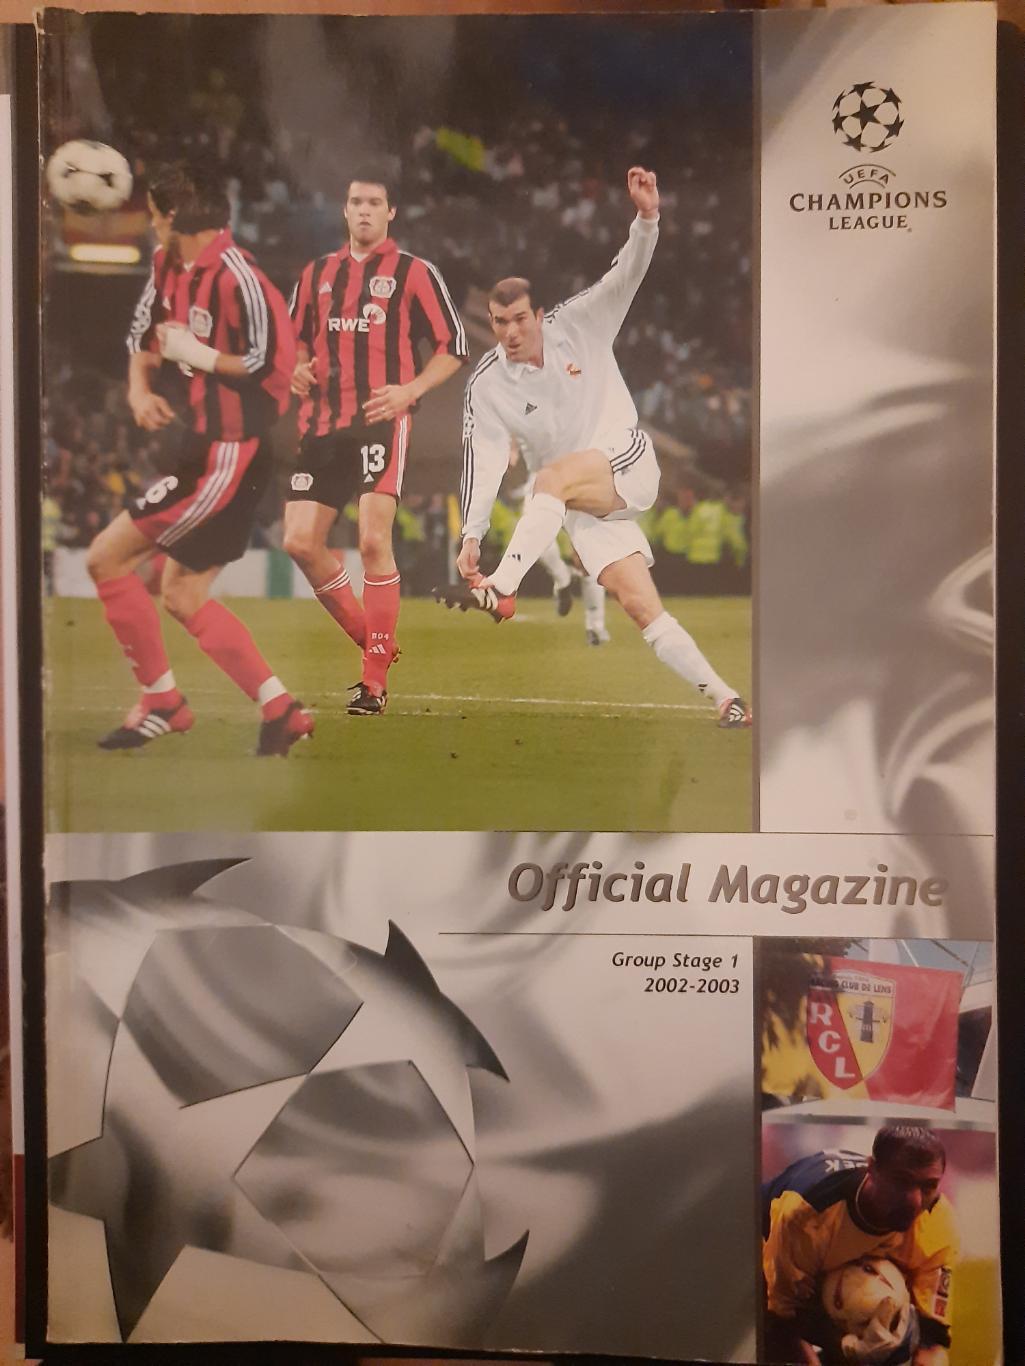 официальный справочник УЕФА, Лига Чемпионов 2002-2003